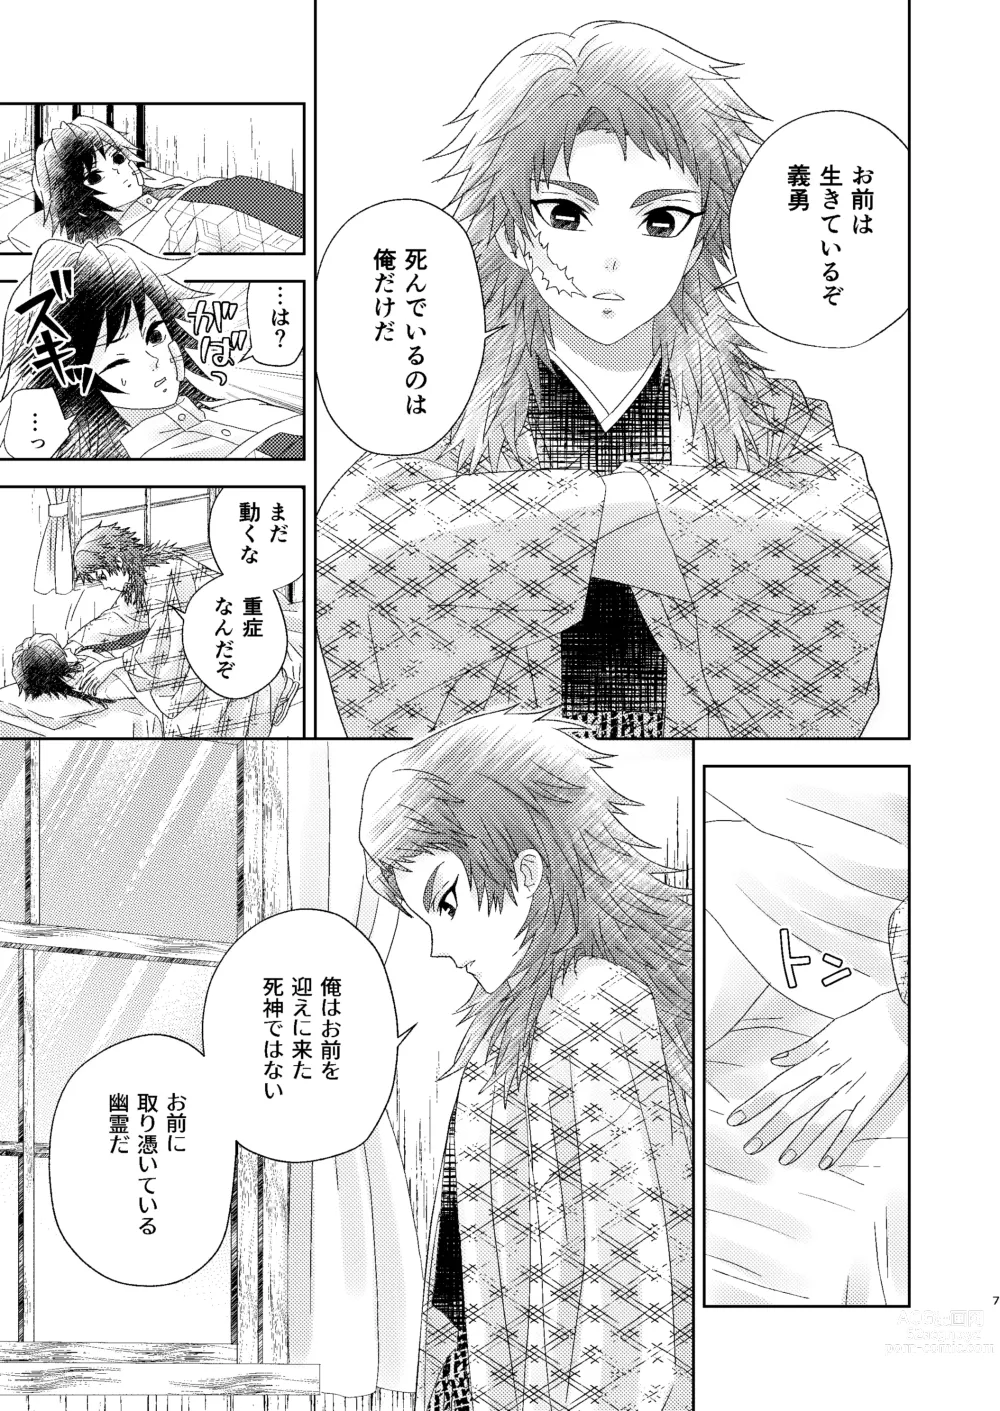 Page 6 of doujinshi Yuurei Kareshi no Koiwazurai